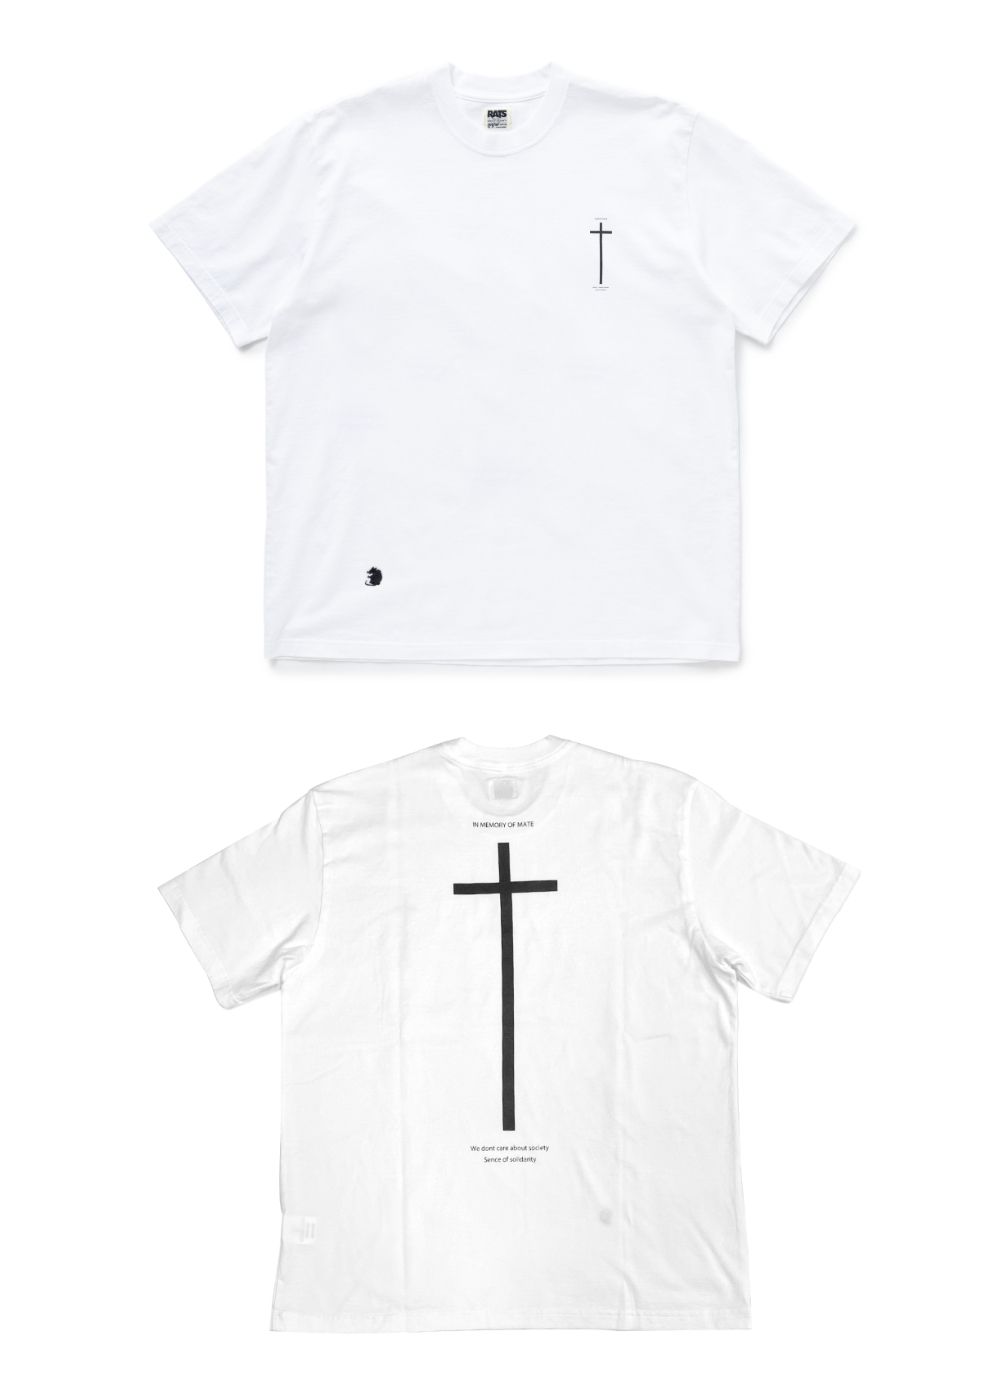 【新品】RATS 2023SS 新作 Tシャツ TEE XL ブラック 黒